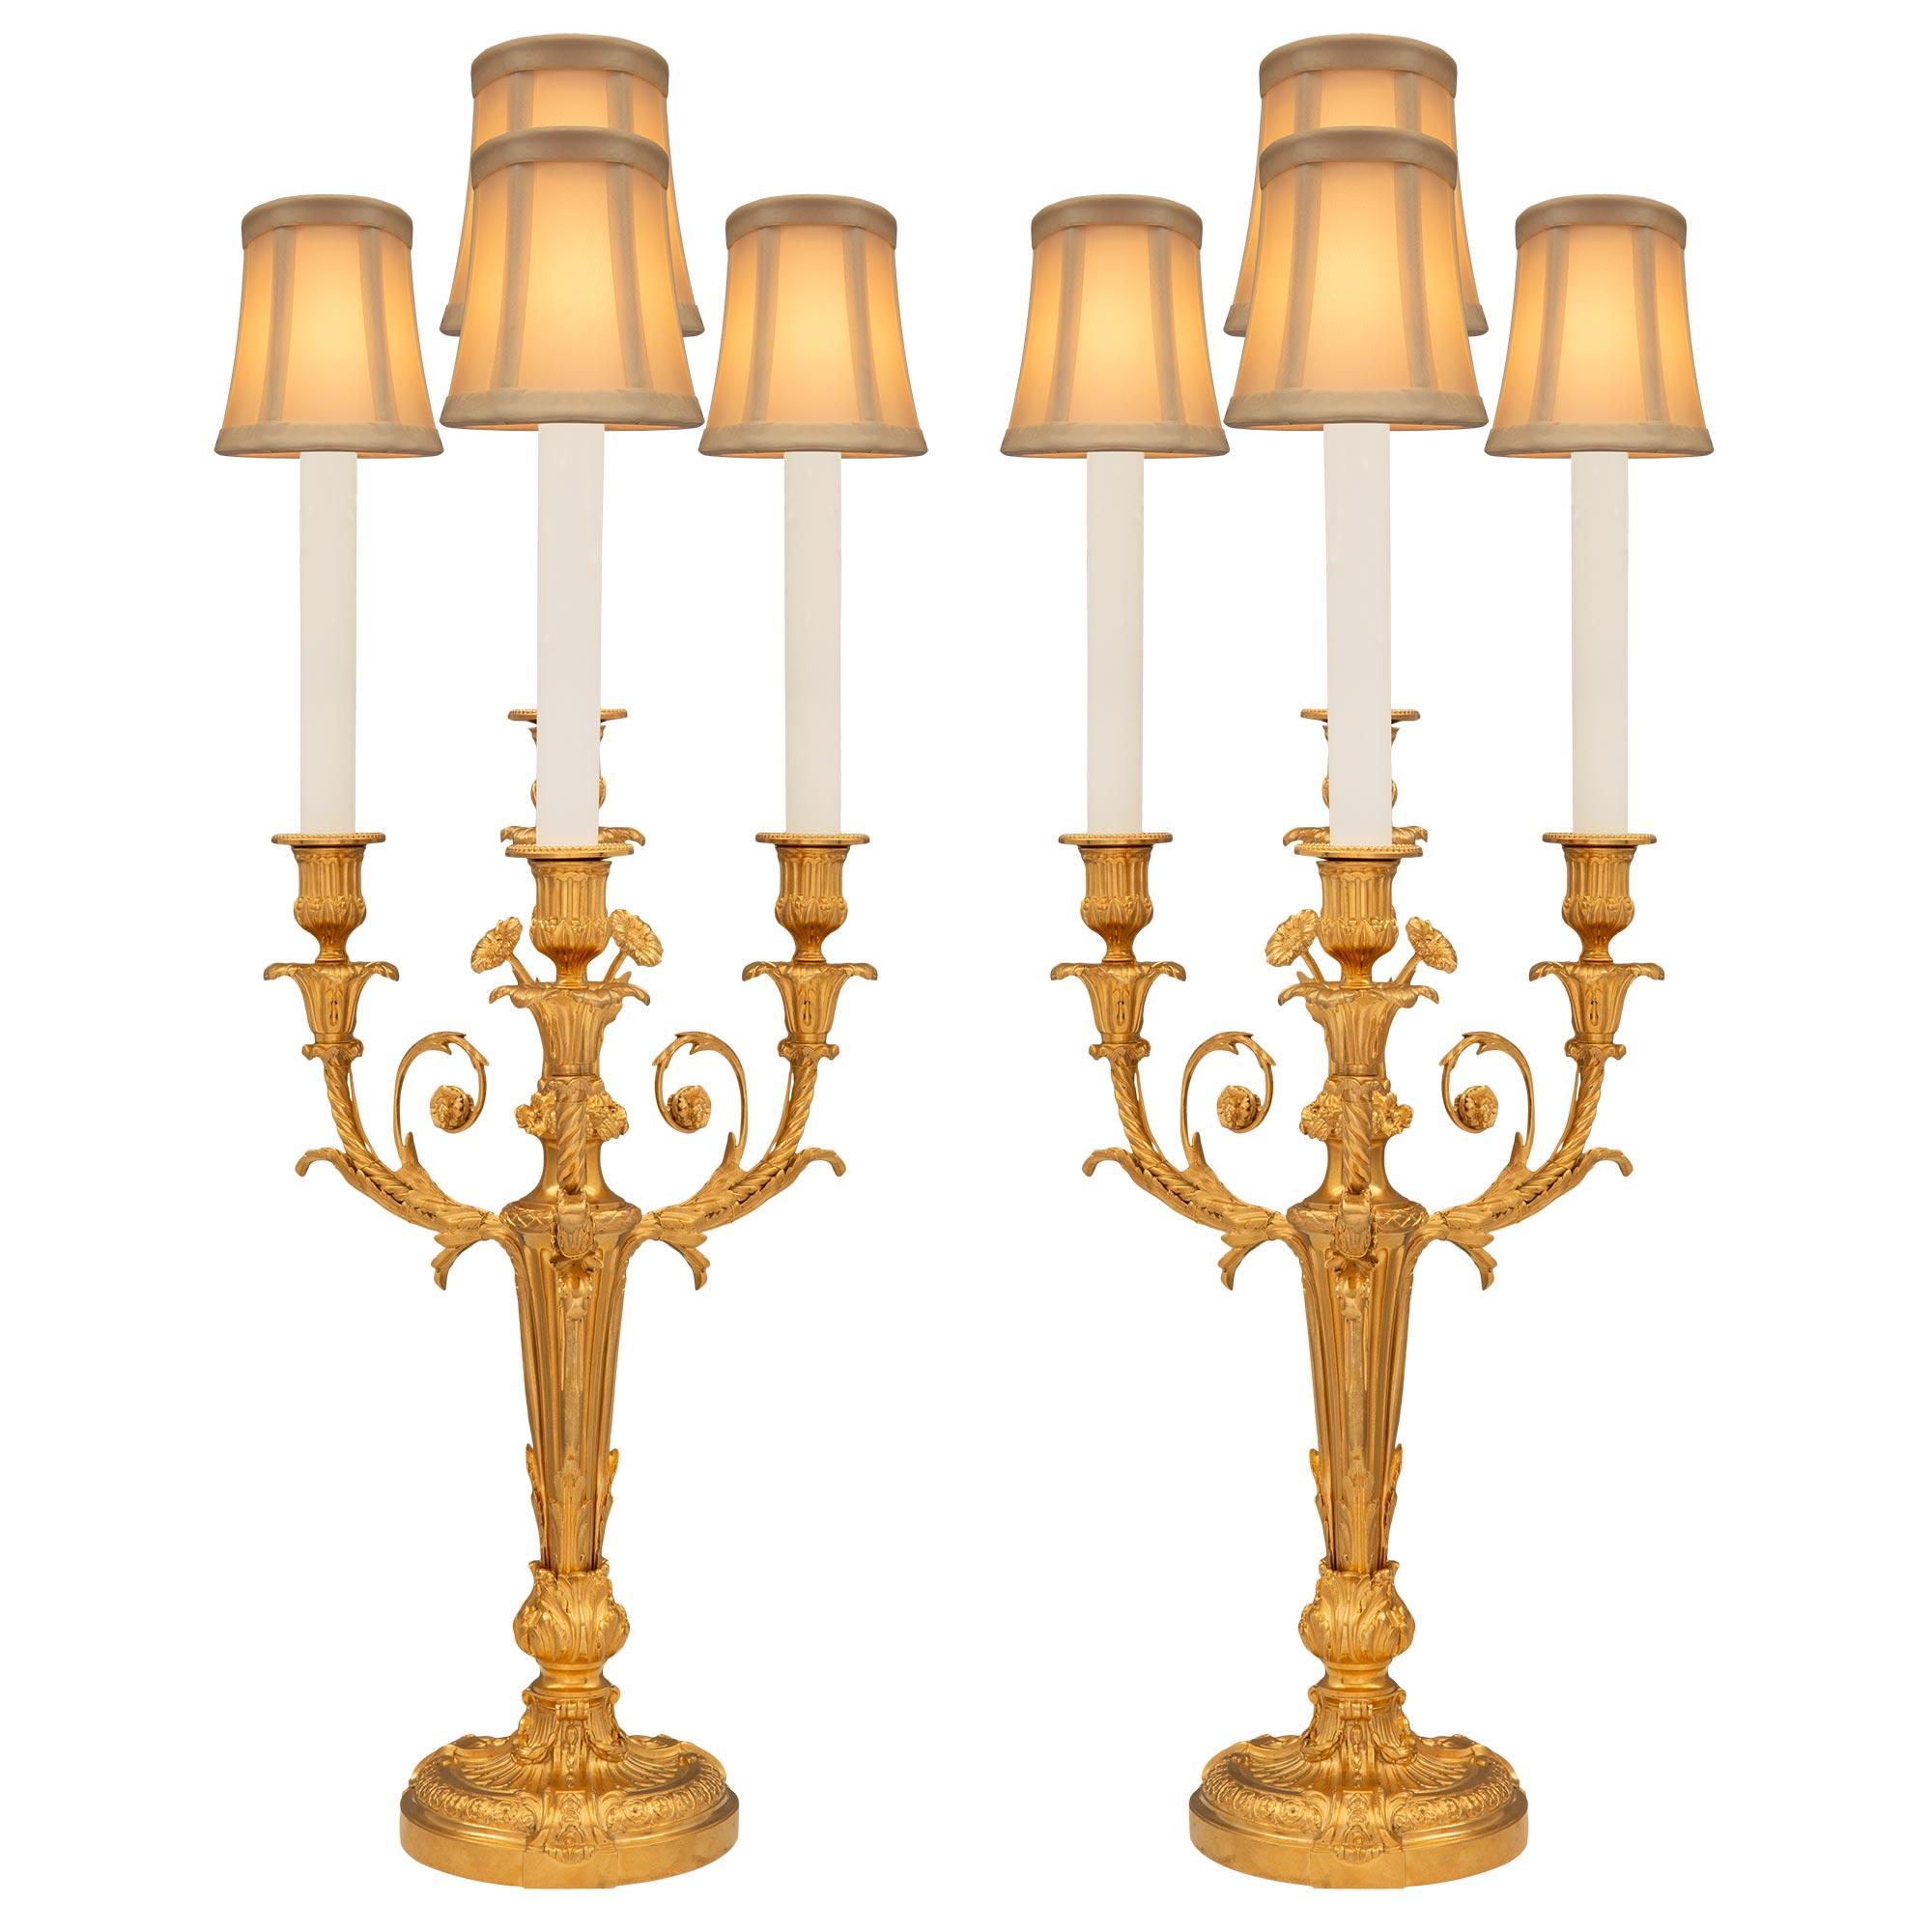 Paire de candélabres en bronze doré de style Louis XVI du XIXe siècle français